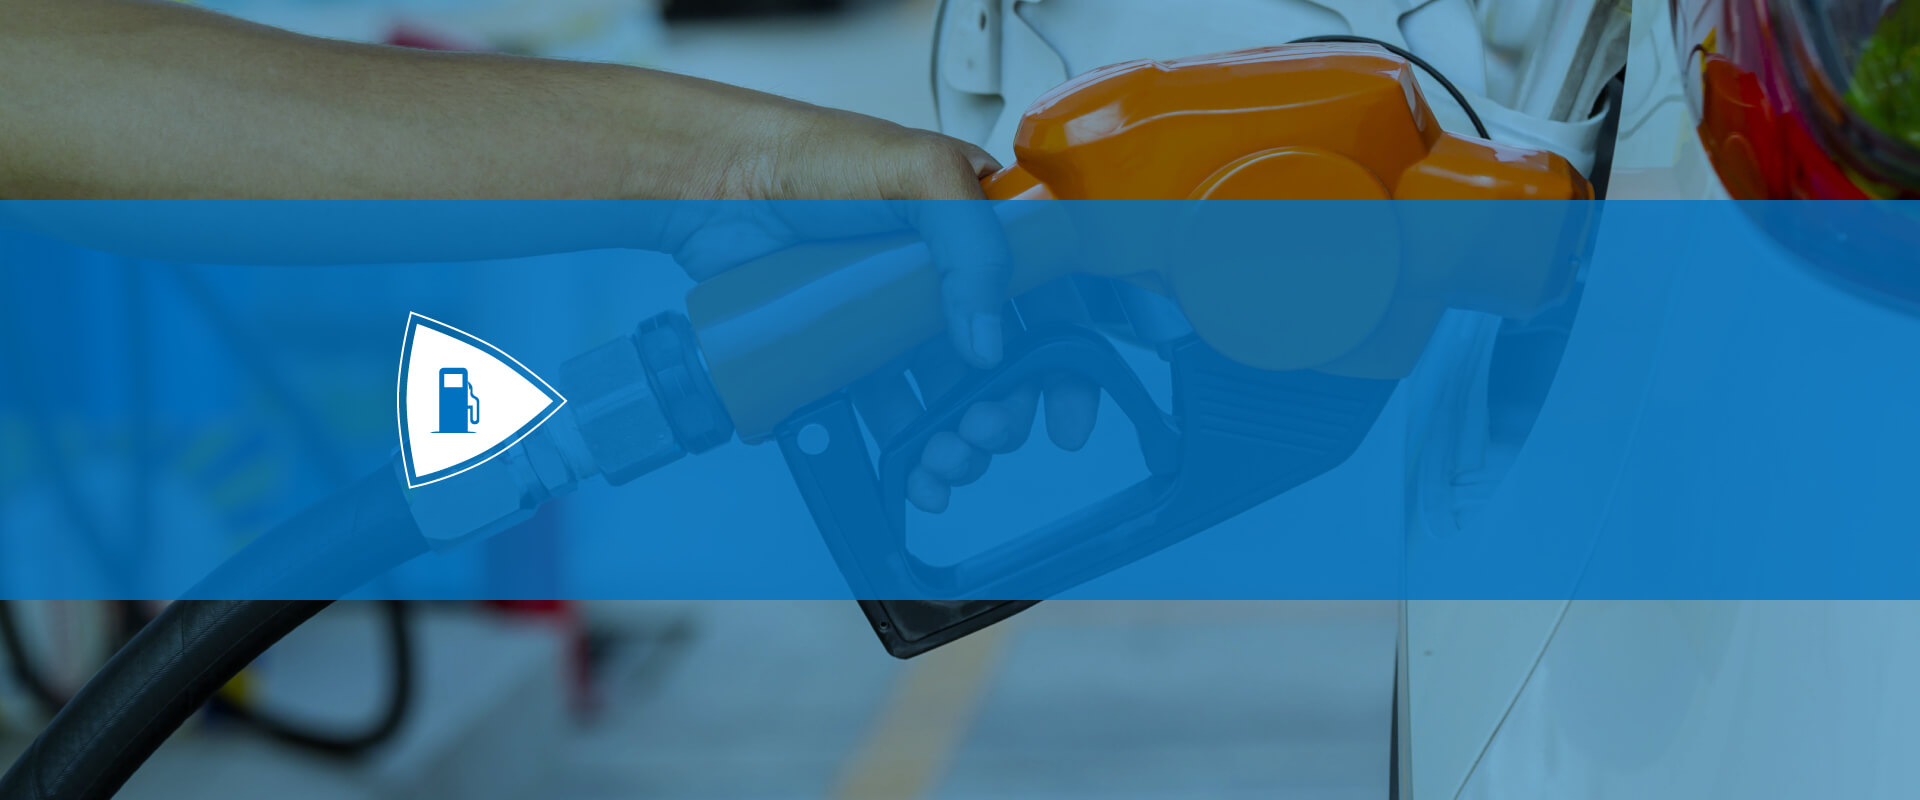 Servicio combustible: ARESEP supervisa la calidad, continuidad, confiabilidad y precio de los combustibles que se consumen en el país.